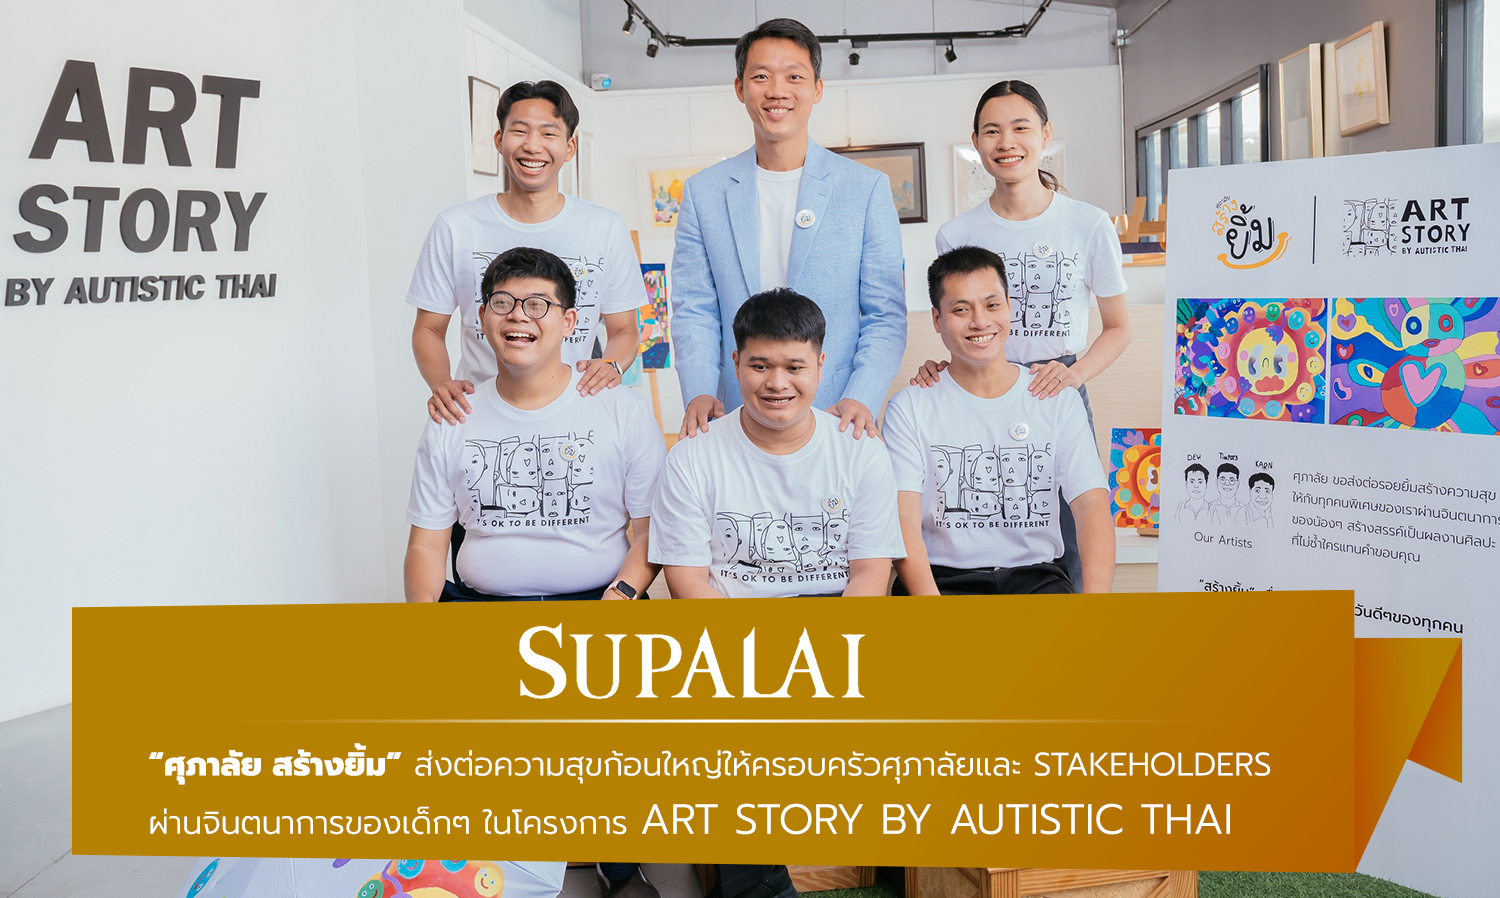 ศุภาลัย สร้างยิ้ม ส่งต่อความสุขก้อนใหญ่ให้ครอบครัวศุภาลัยและ Stakeholders   ผ่านจินตนาการของเด็กๆ ในโครงการ ART STORY by Autistic Thai 